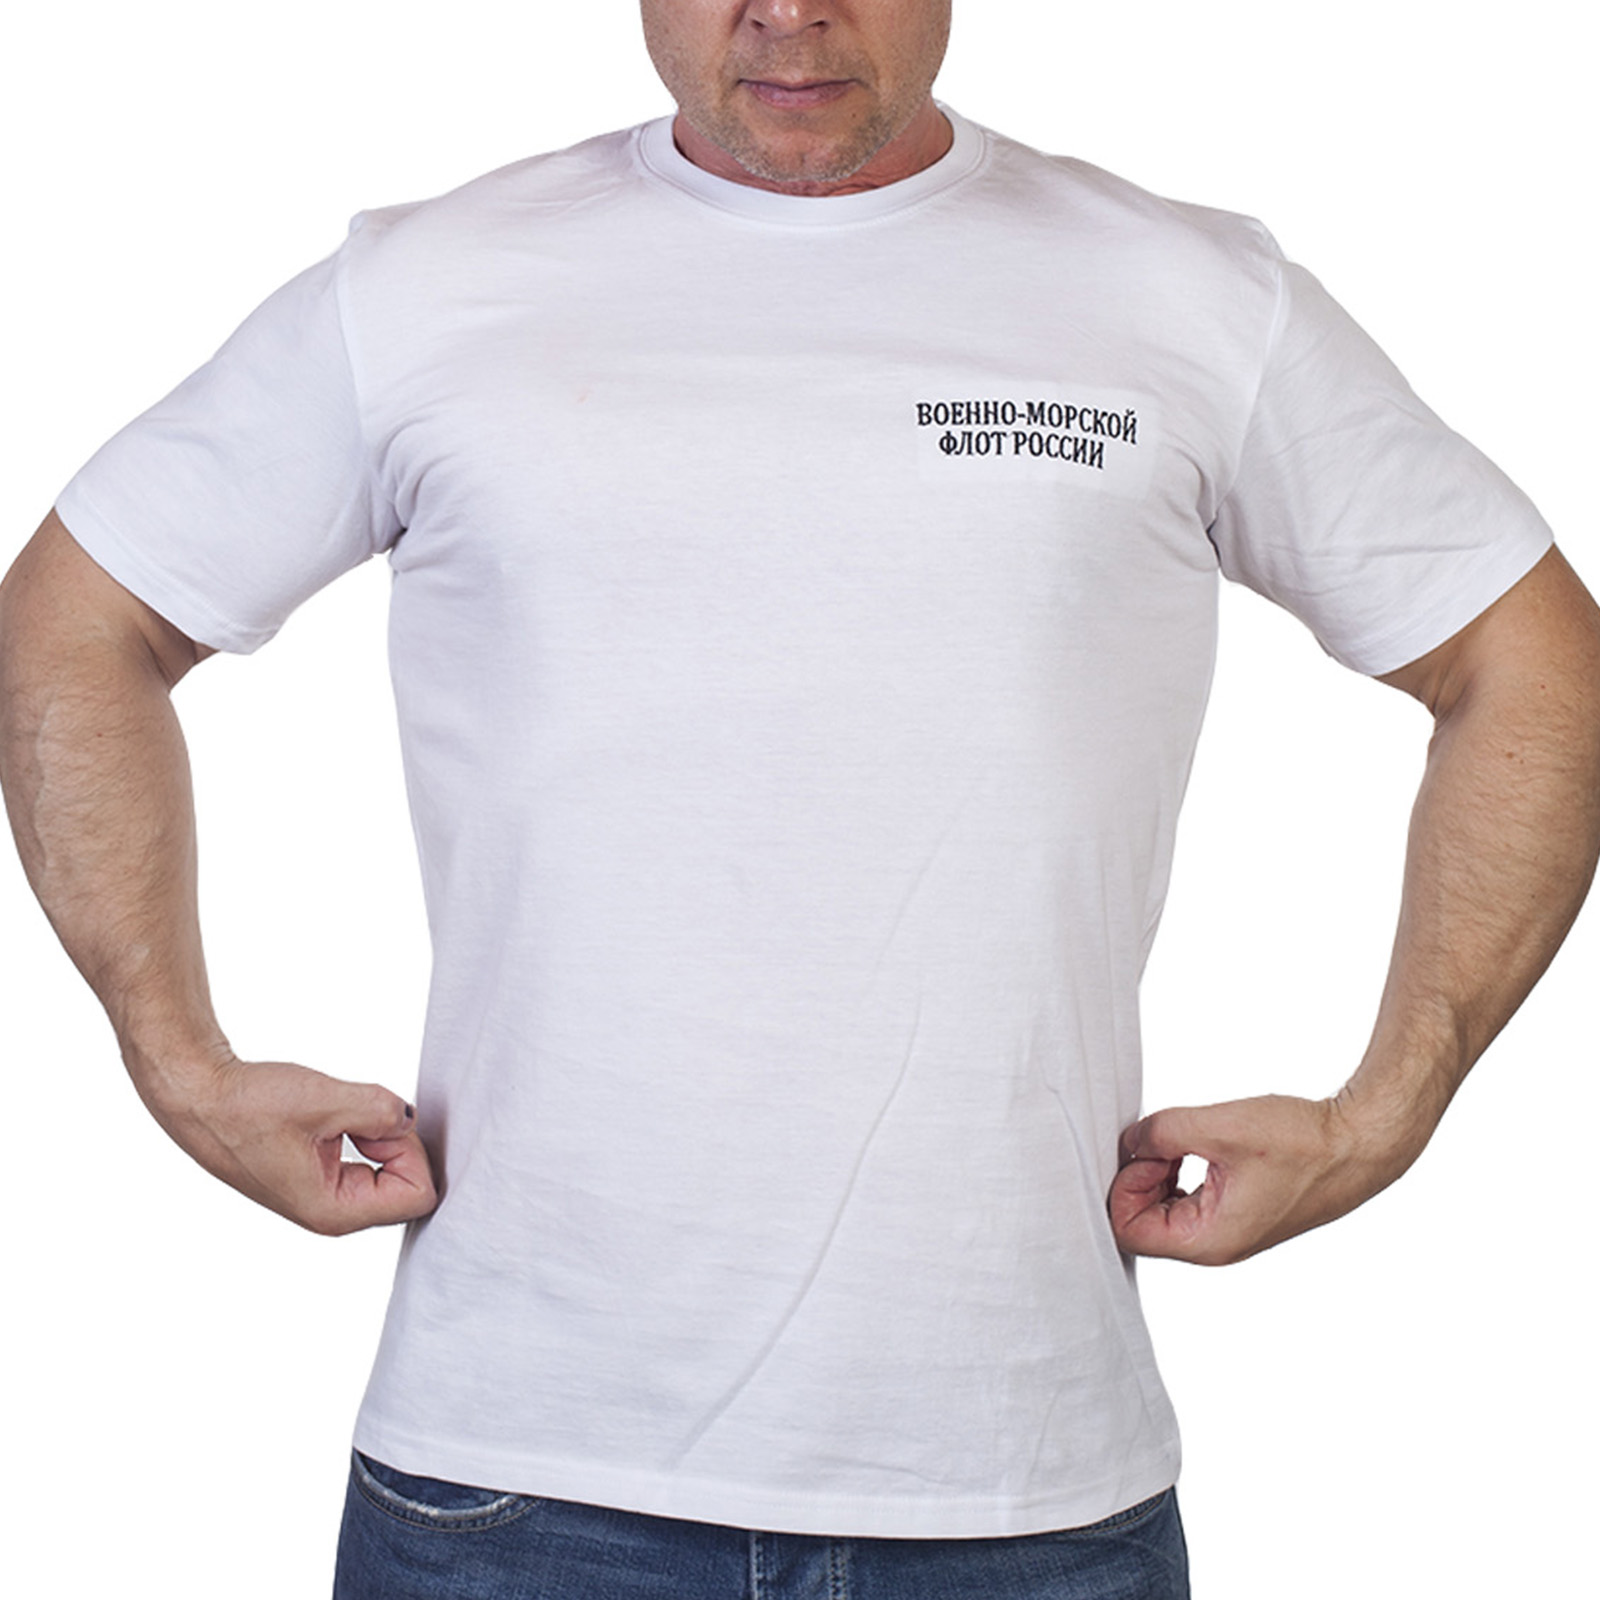 Белая футболка с вышивкой "Военно-морской флот России" от Военпро